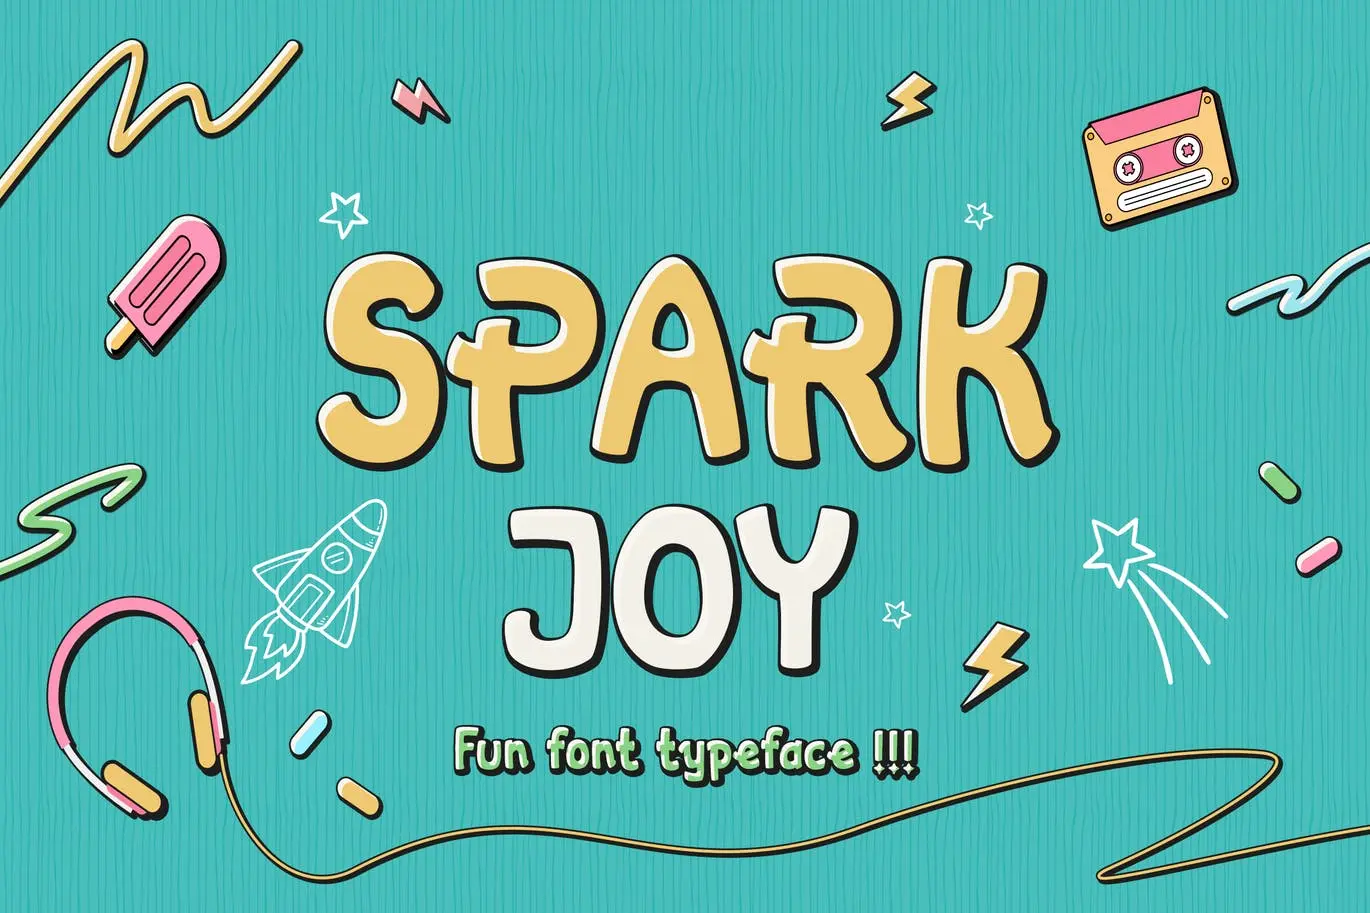 漫画风格无衬线英文字体素材 Spark Joy – Comic Display Font